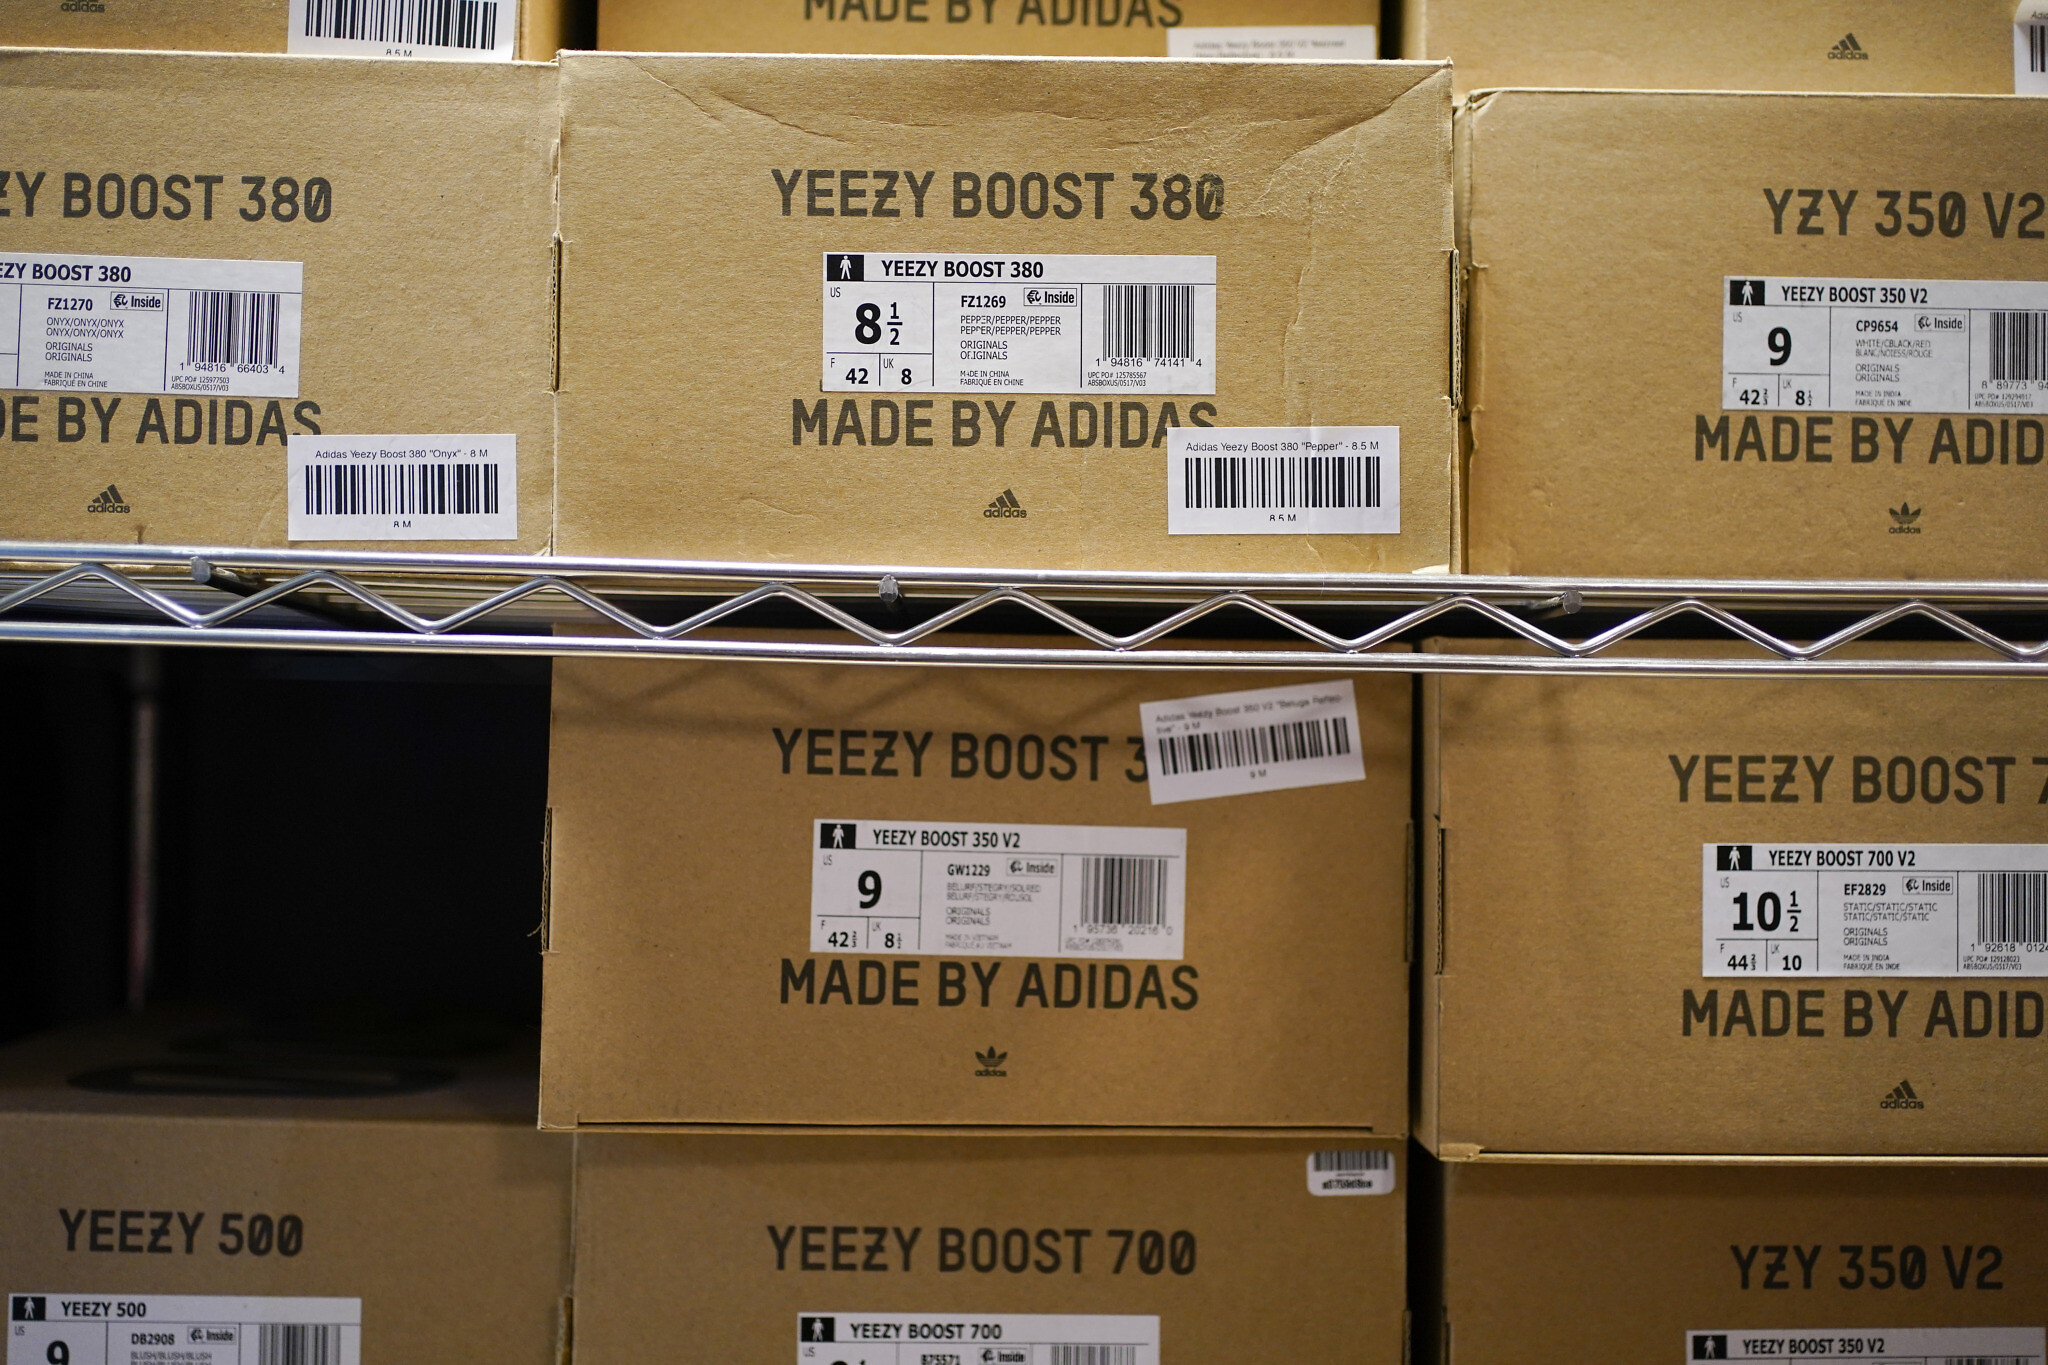 Ye or nay? Yeezy sneaker sales soar as fans, companies split on